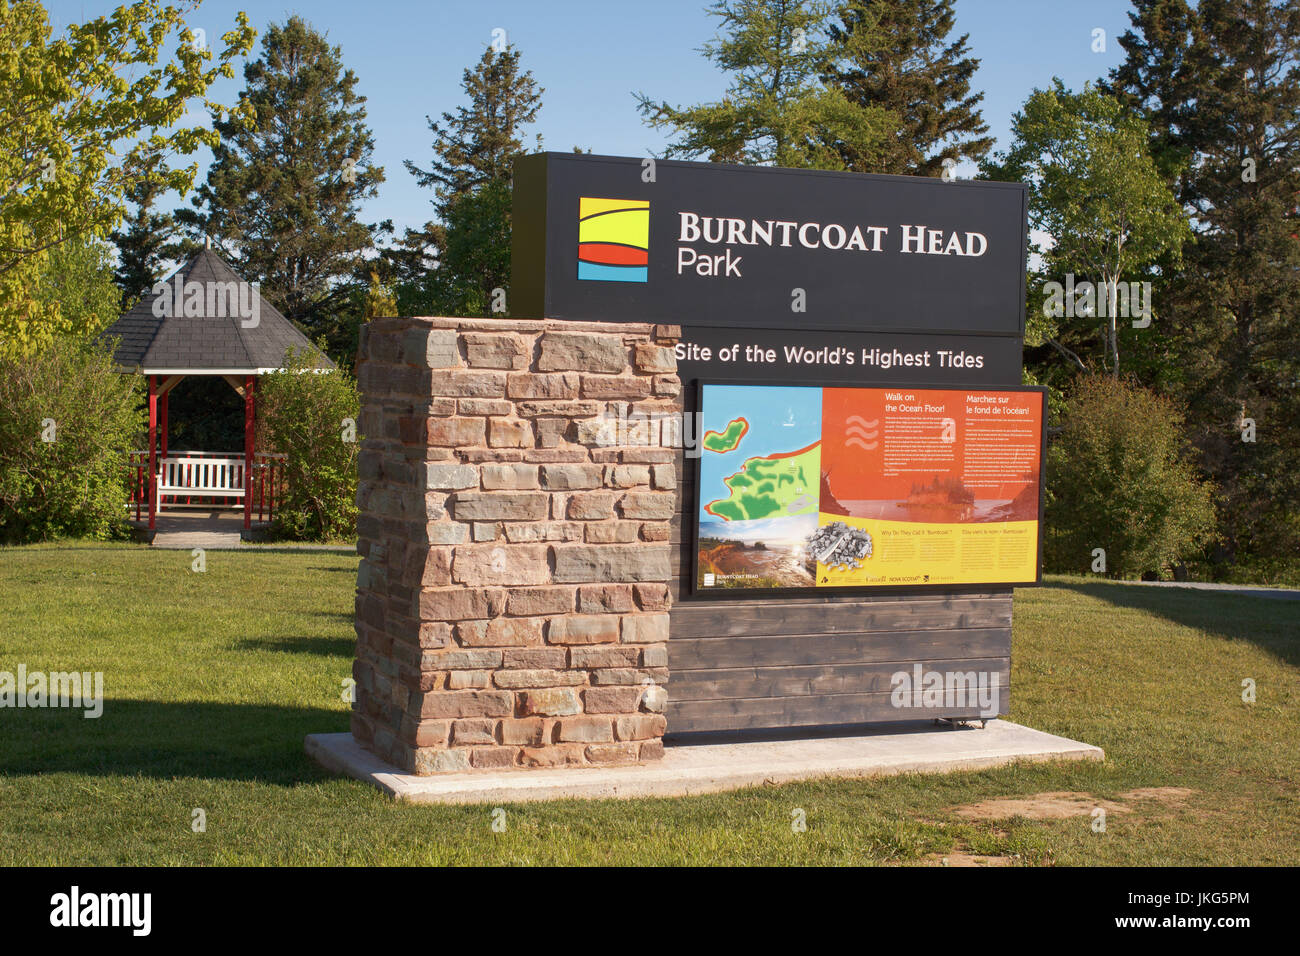 BURNTCOAT HEAD, CANADA - JUNE 07 2017: Nova Scotia Provincial Park sign. Burntcoat Head is a rural community in Nova Scotia and has some of the highes Stock Photo